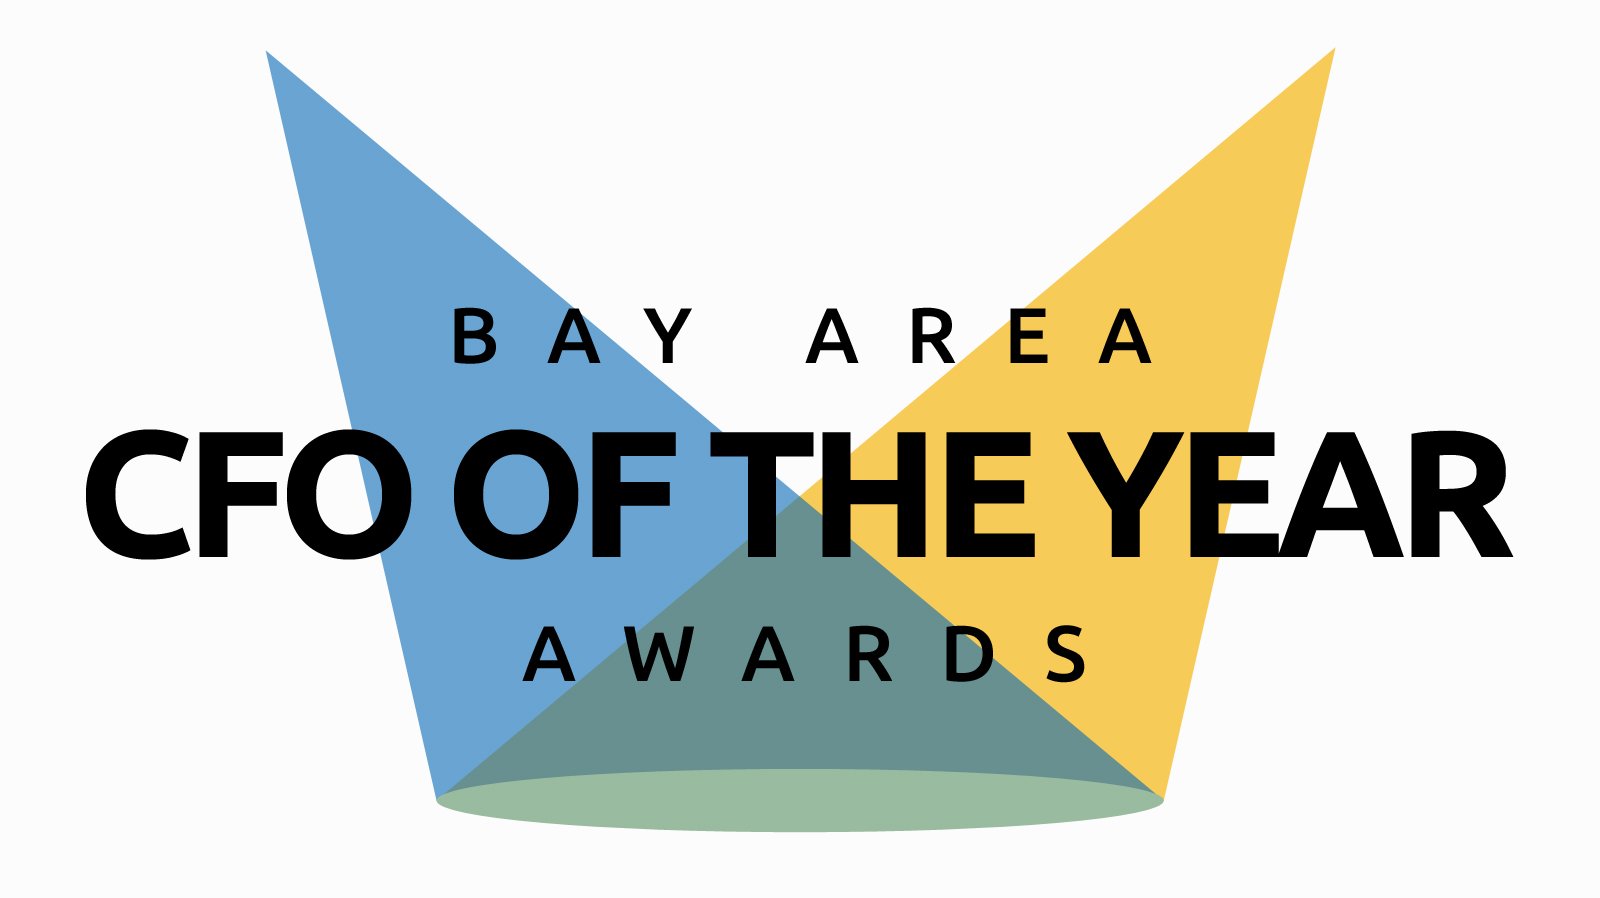 2019 Bay Area CEO of the Year. Award logo